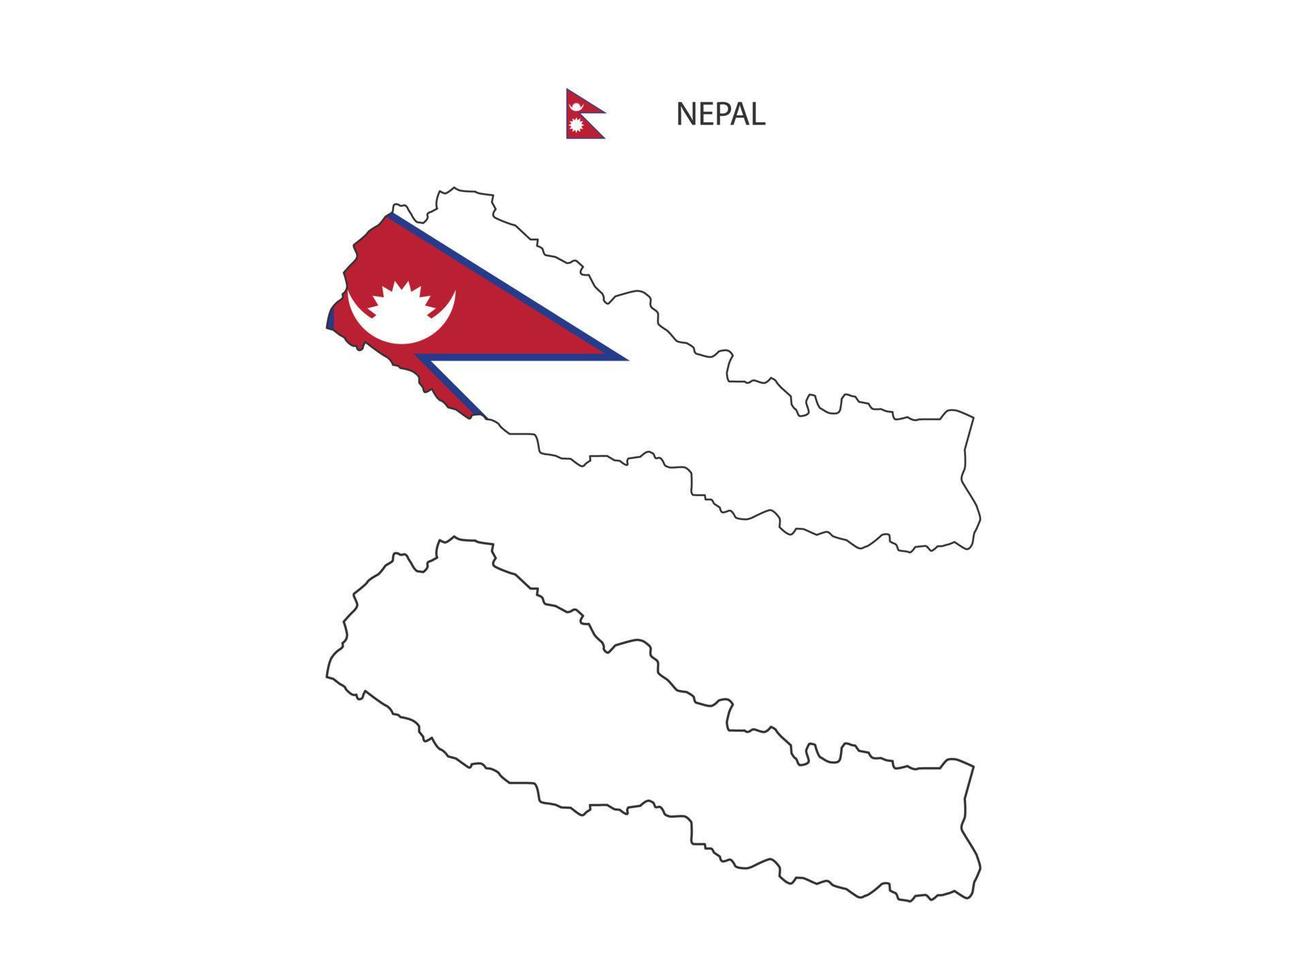 népal carte ville vecteur divisé par le style de simplicité de contour. ont 2 versions, la version en ligne fine noire et la couleur de la version du drapeau du pays. les deux cartes étaient sur fond blanc.